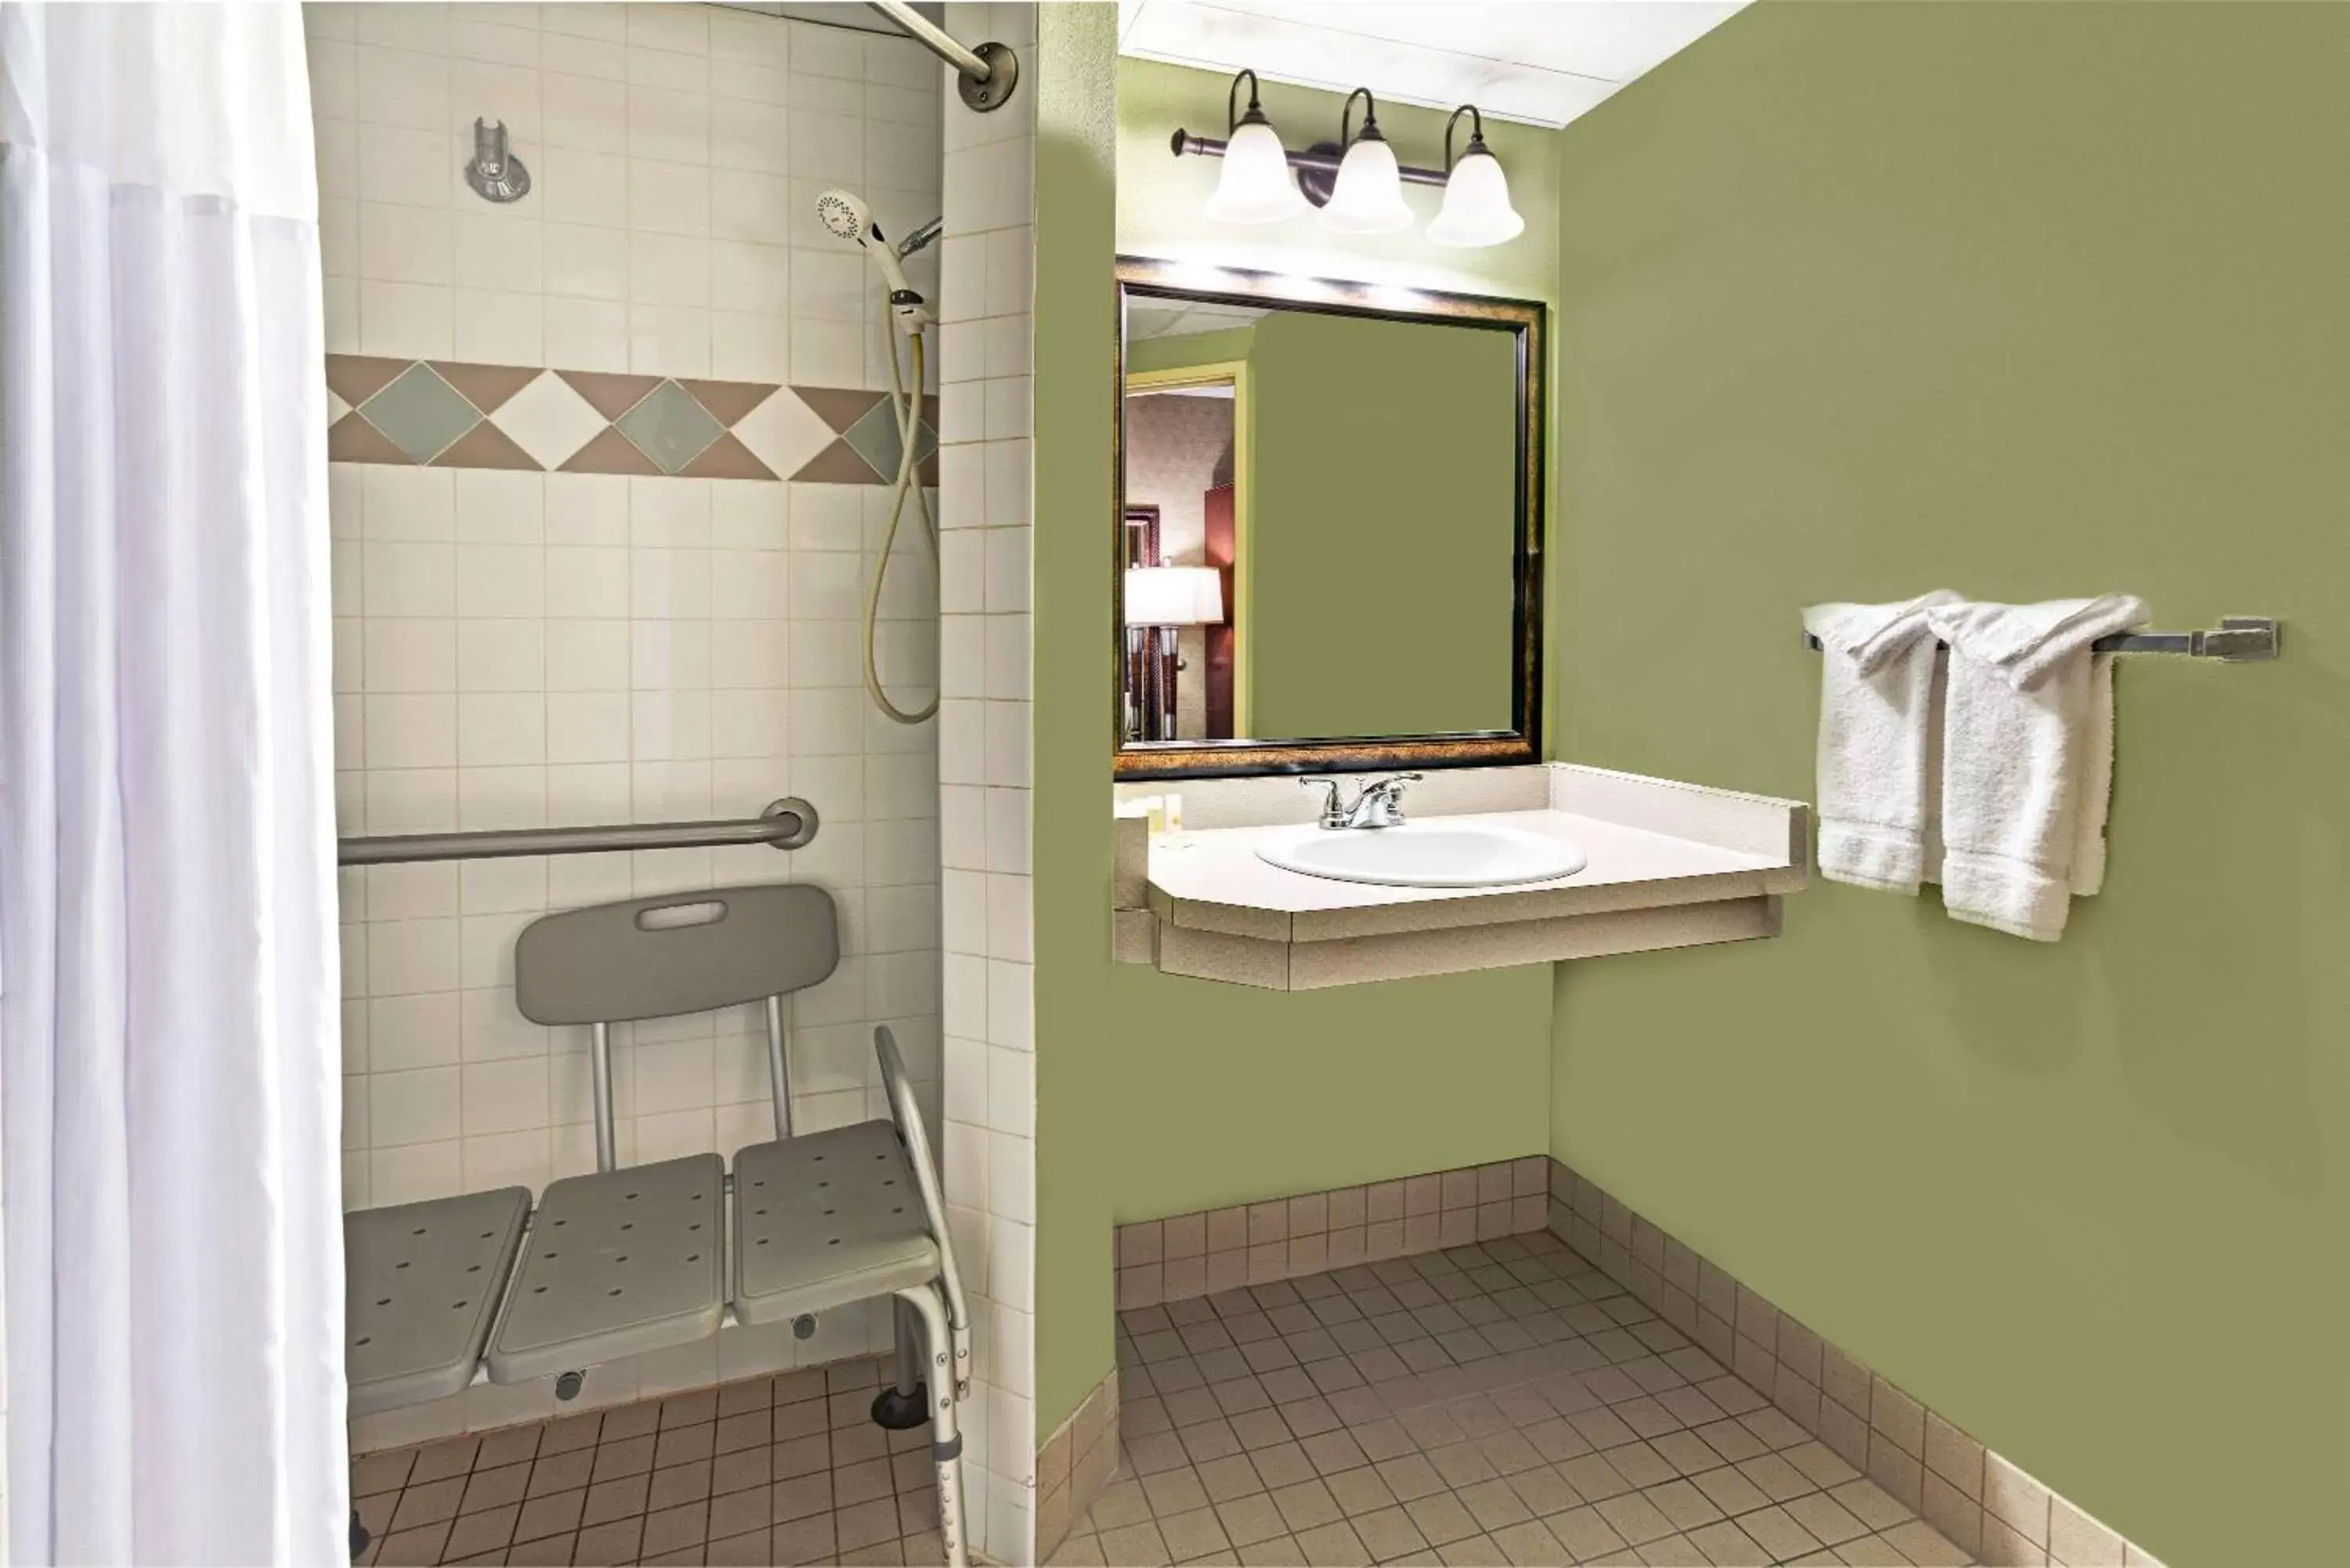 Photo of the whole room, Bathroom in Days Inn by Wyndham Cheyenne